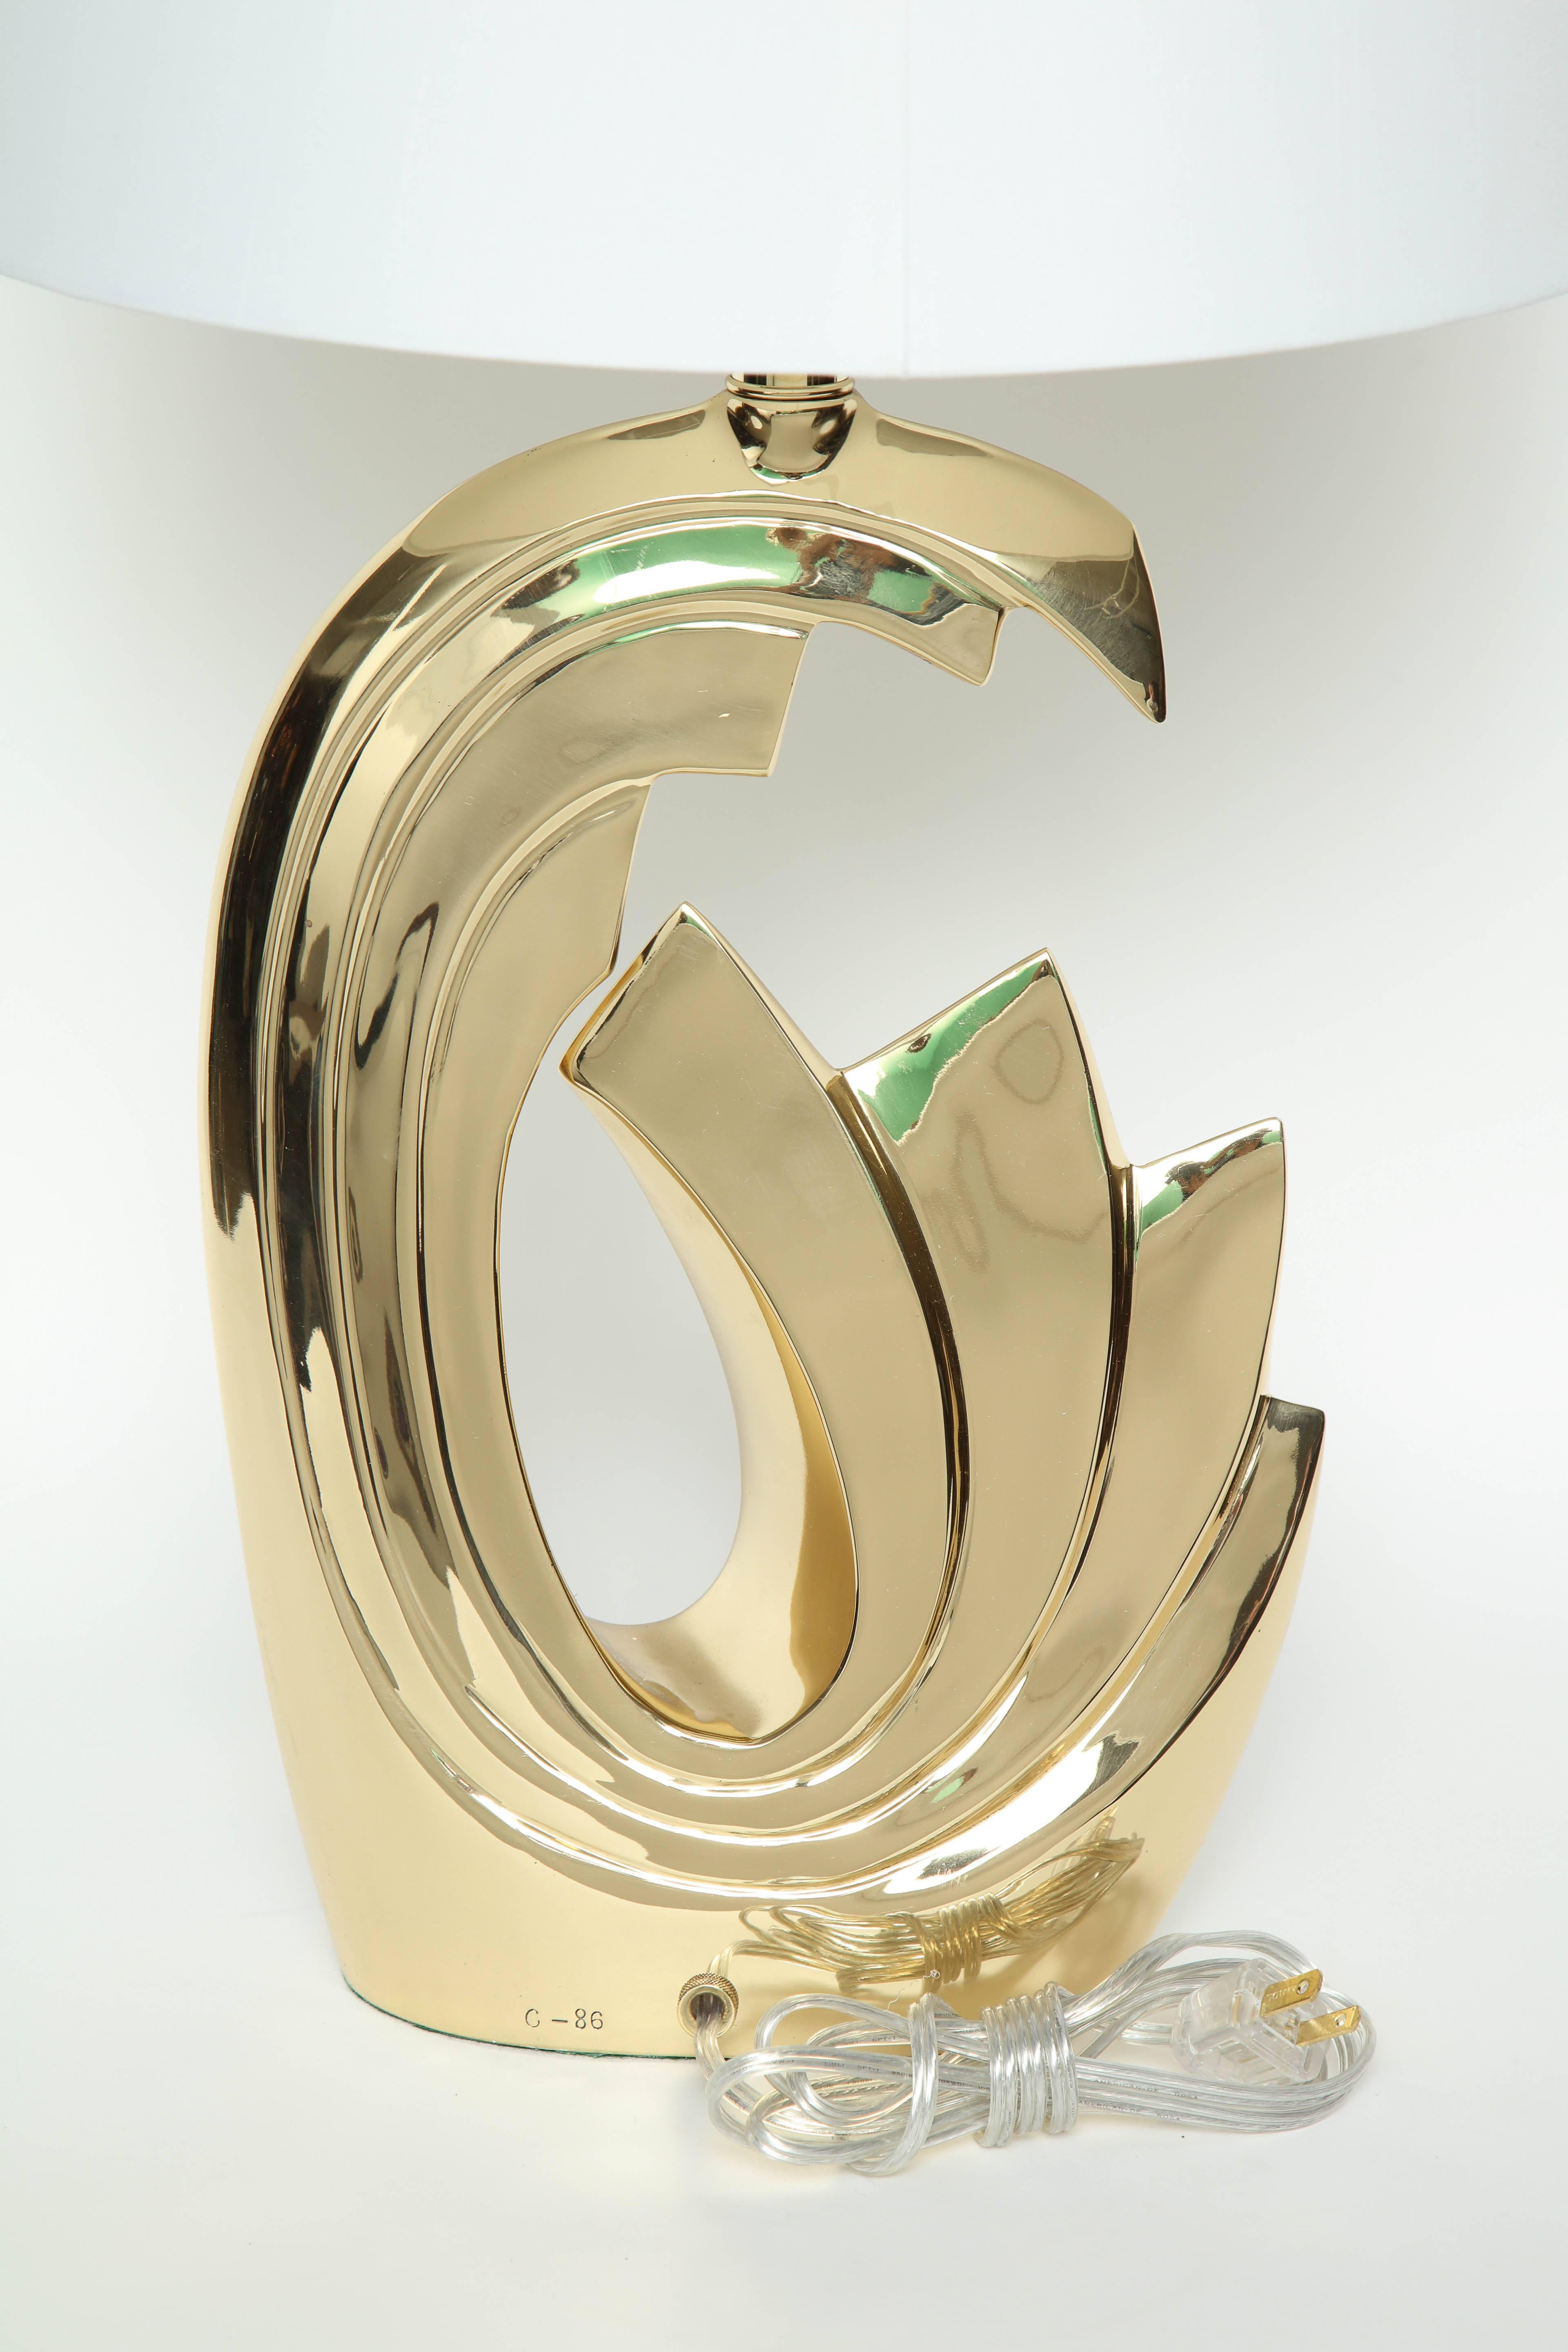 American Pierre Cardin Brass Tidal Wave Lamps